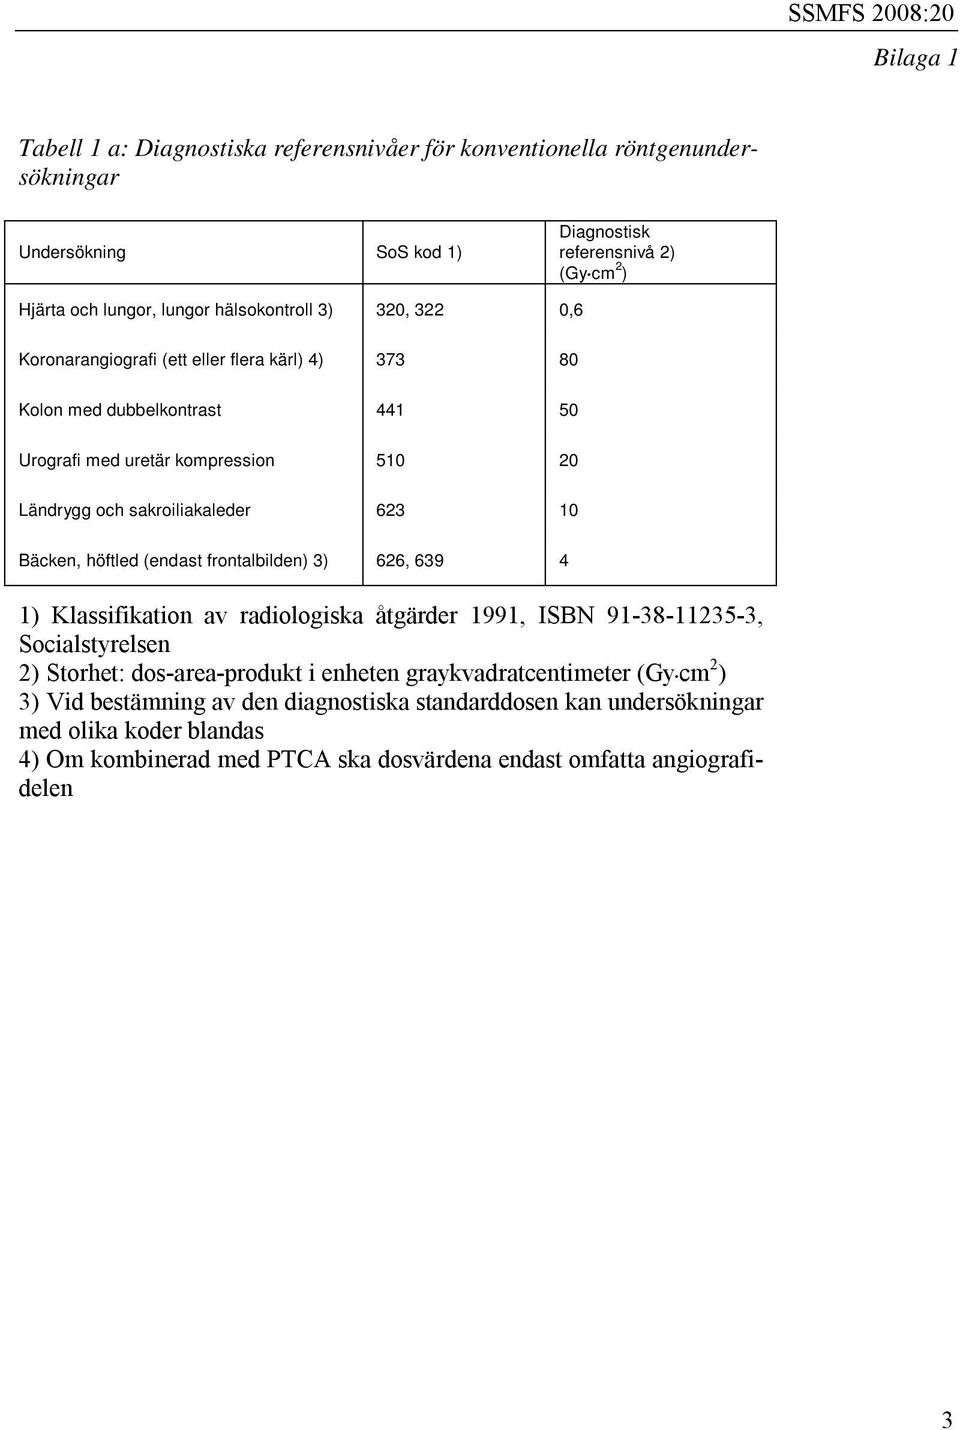 10 Bäcken, höftled (endast frontalbilden) 3) 626, 639 4 1) Klassifikation av radiologiska åtgärder 1991, ISBN 91-38-11235-3, Socialstyrelsen 2) Storhet: dos-area-produkt i enheten